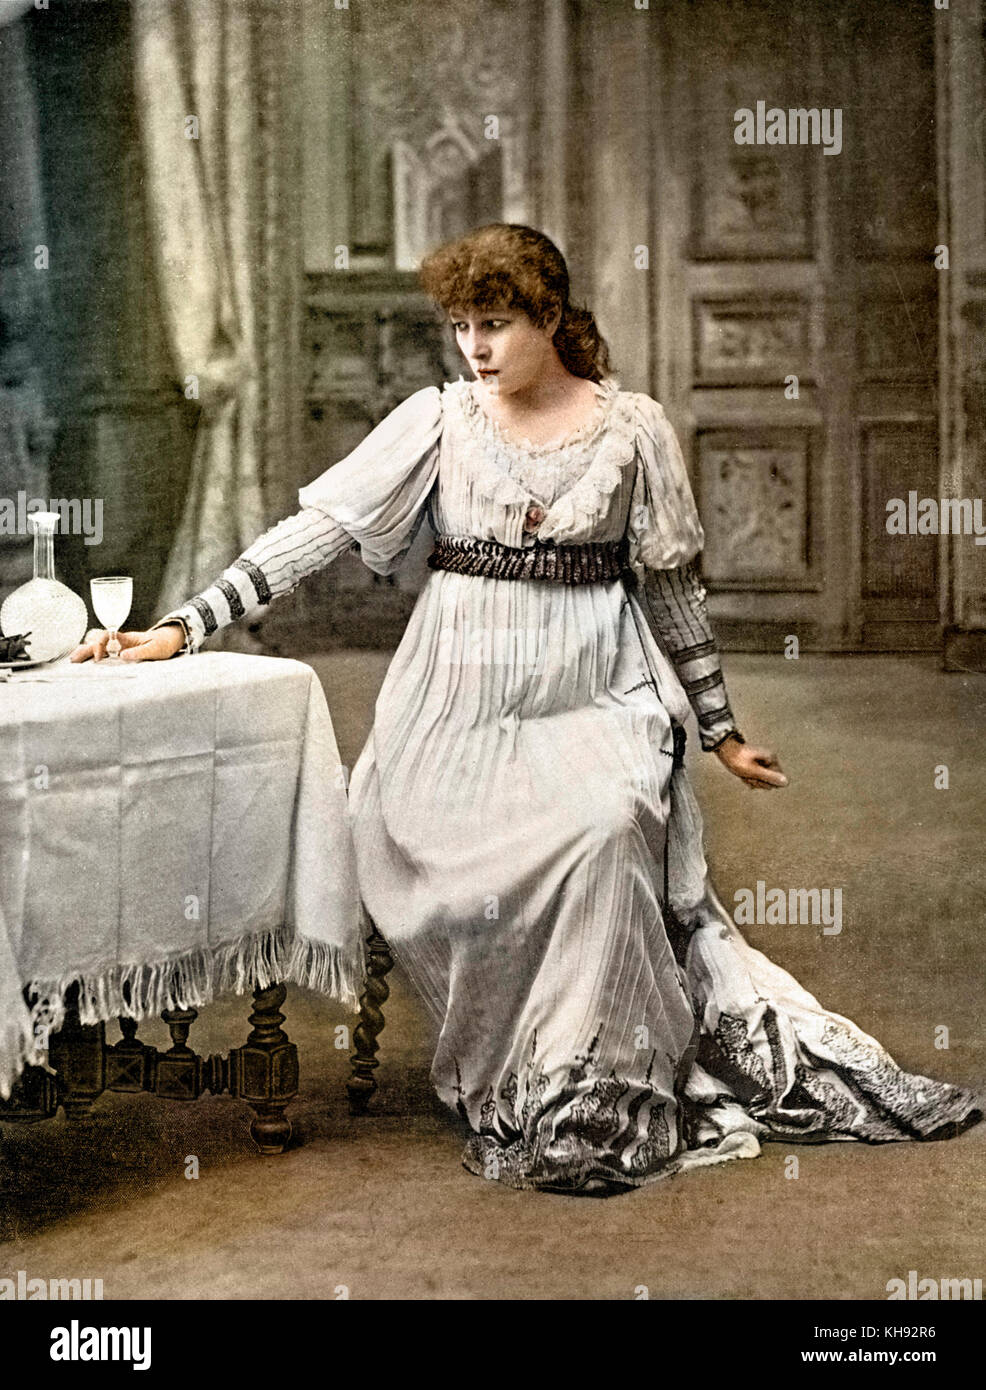 Sarah-Bernhardt en el papel de Tosca en juego por Victorien Sardou, en 1899, que inspiró la creación de la ópera de Puccini, "Tosca". Foto de stock